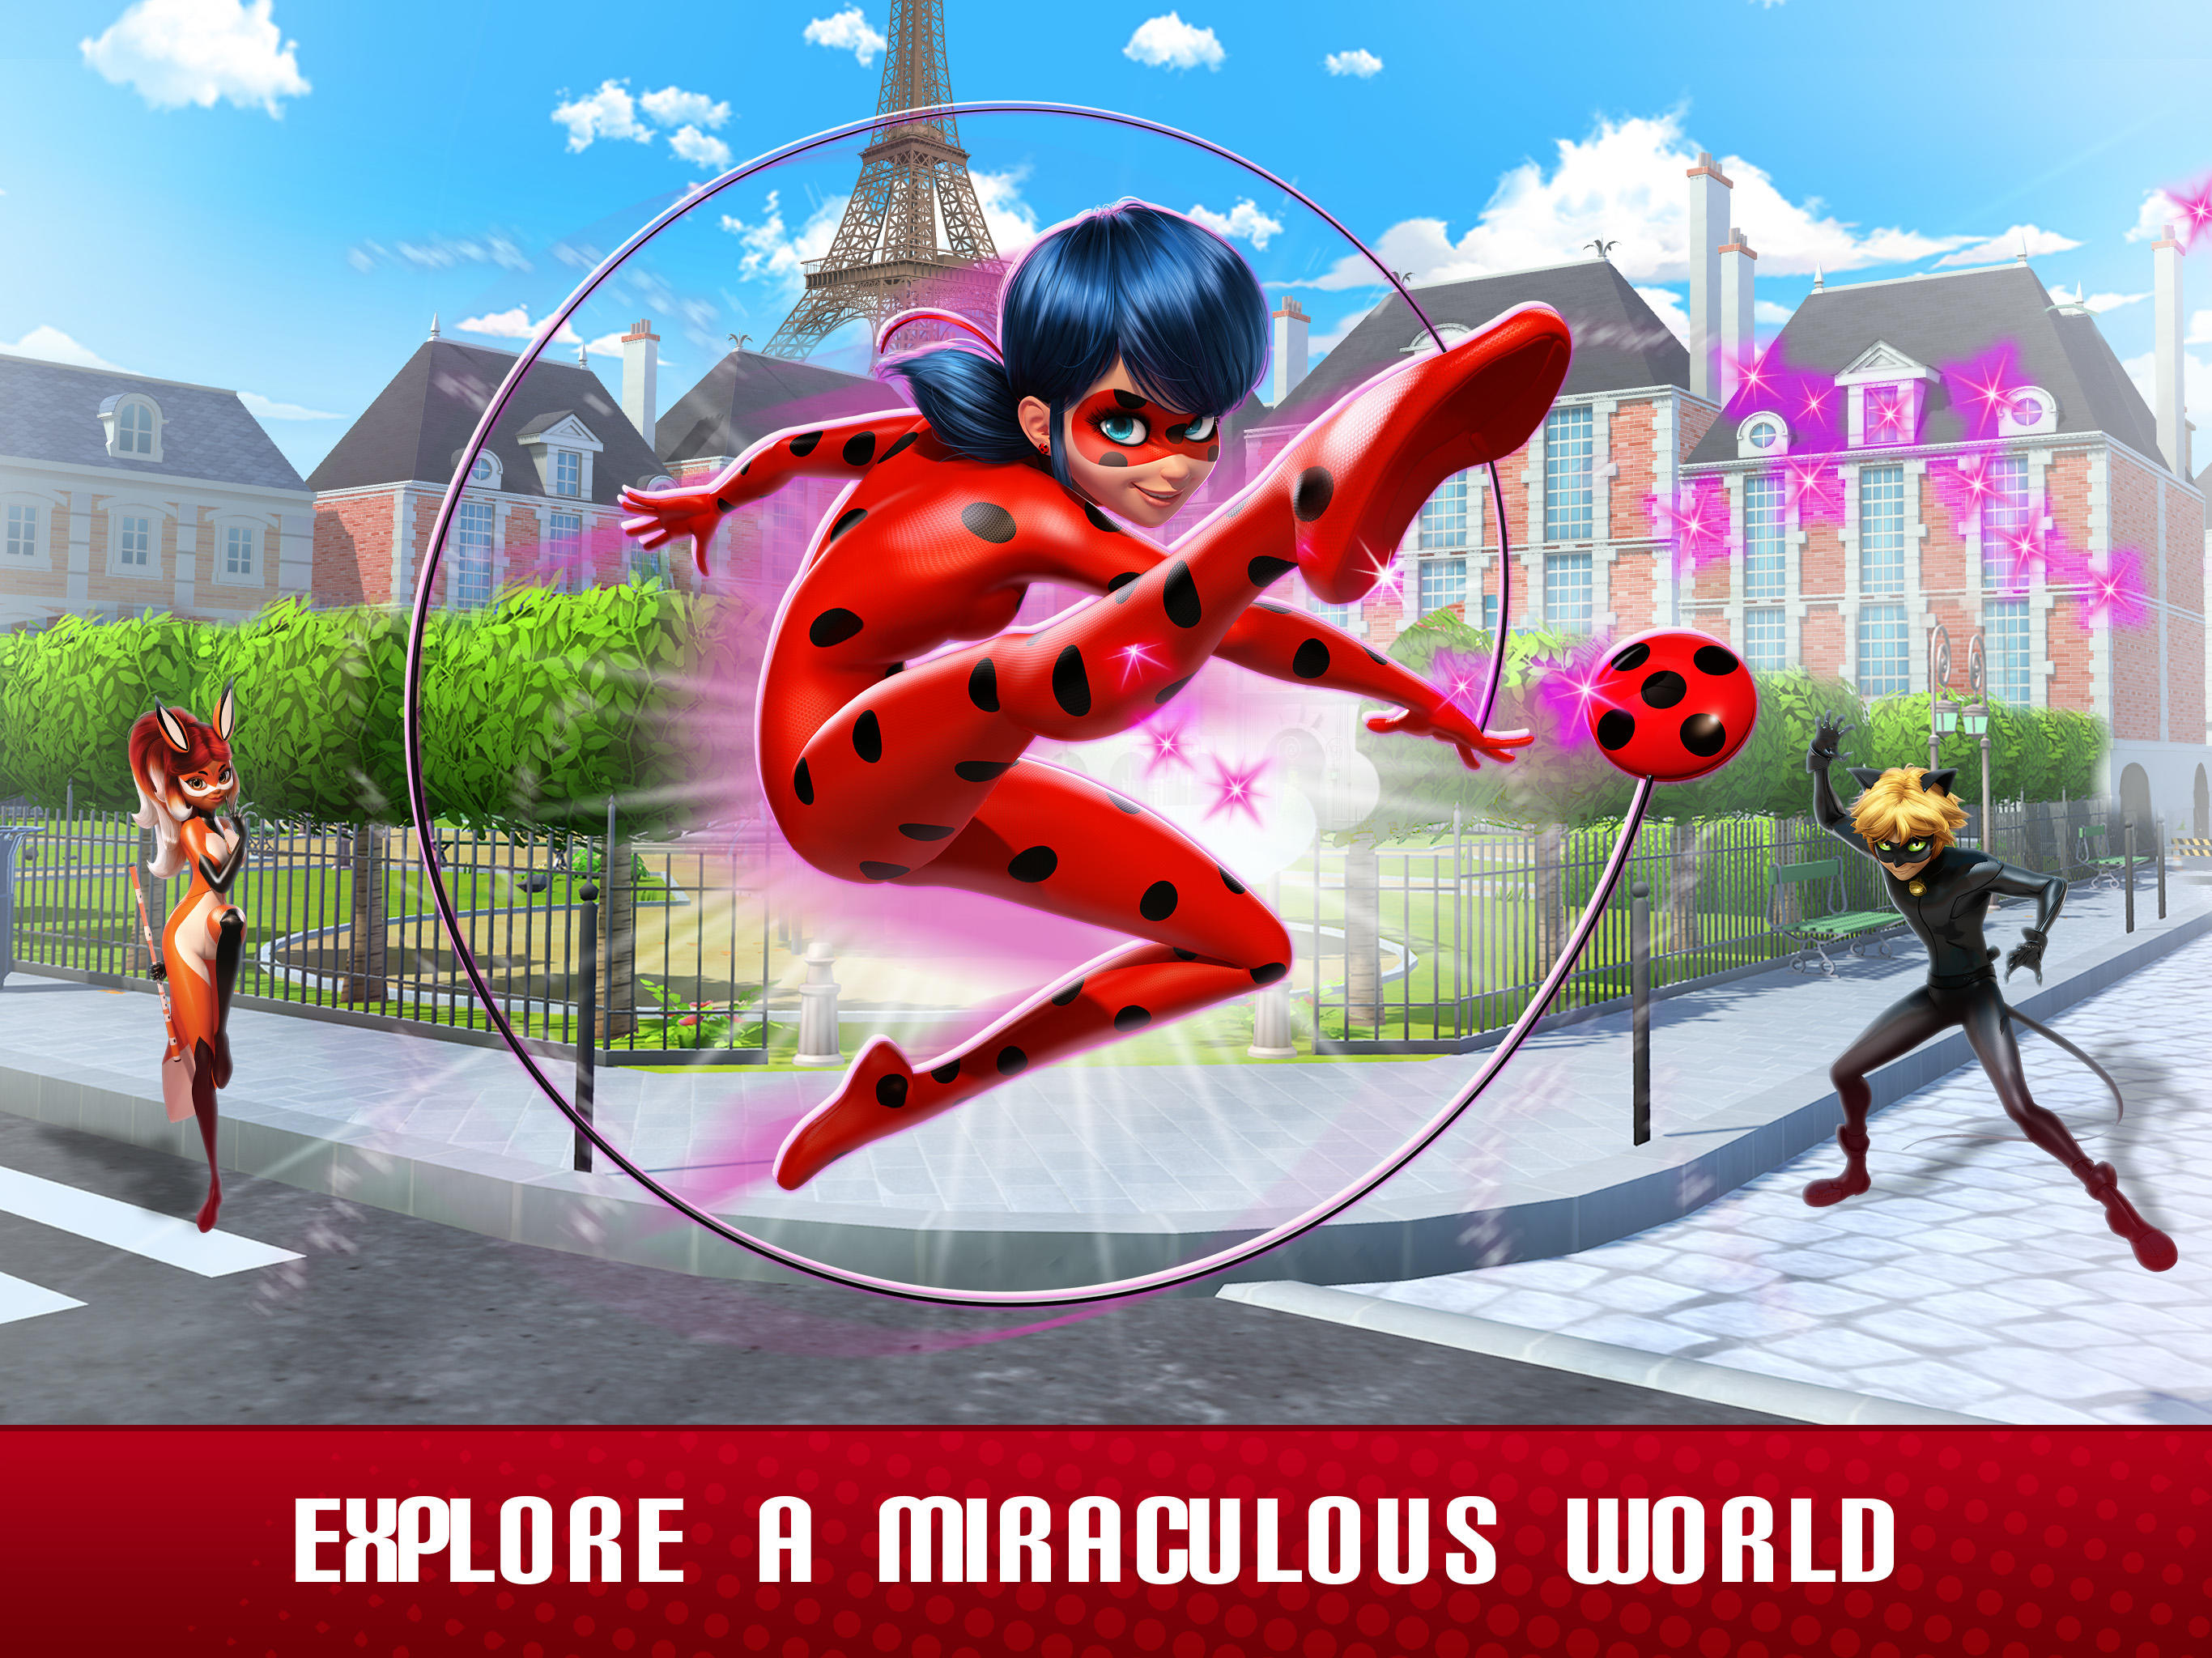 Save Paris with Ladybug & Cat Noir! - Budge Studios—Mobile Apps